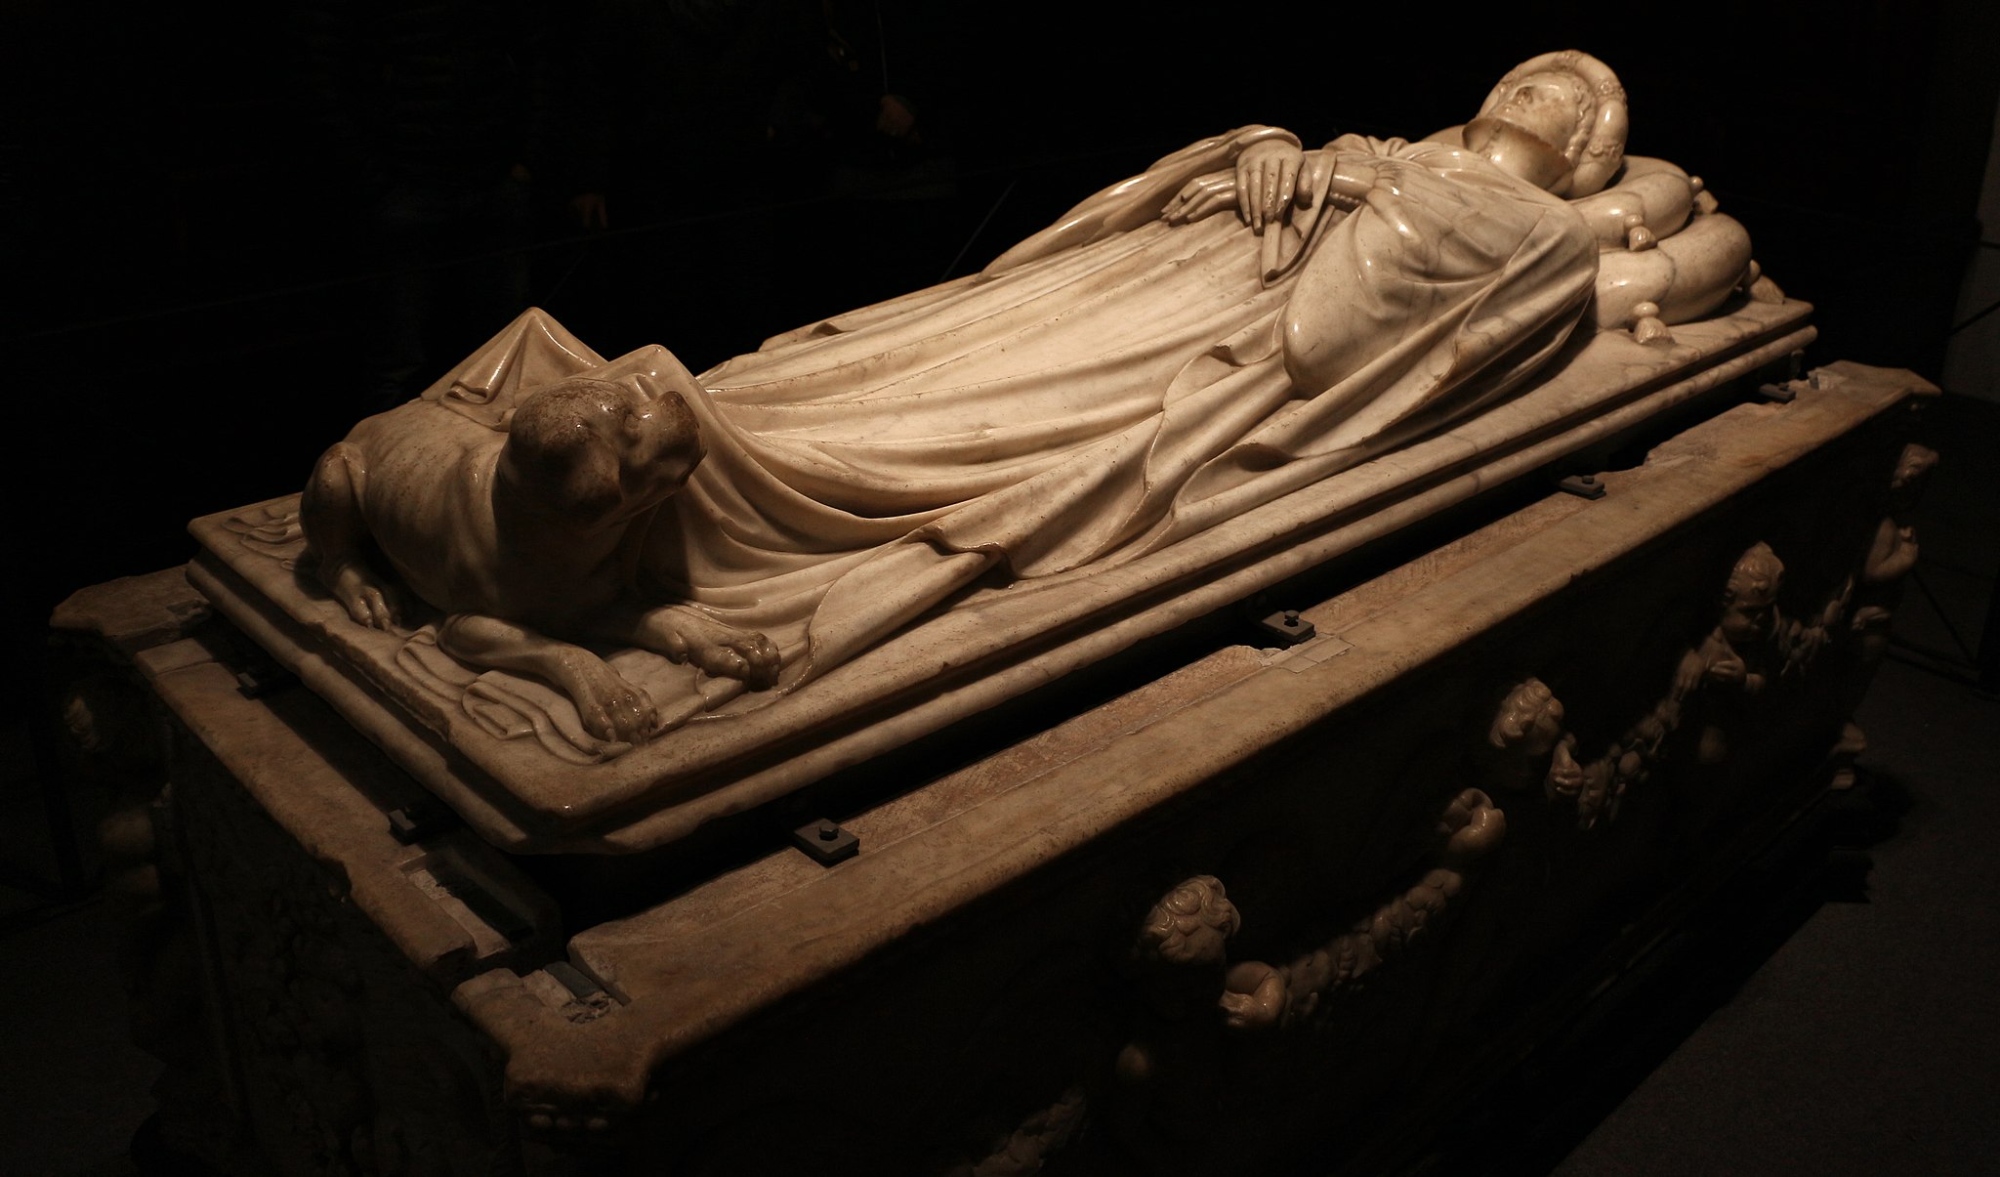 El sarcófago de mármol de Ilaria del Carretto, de Jacopo della Quercia